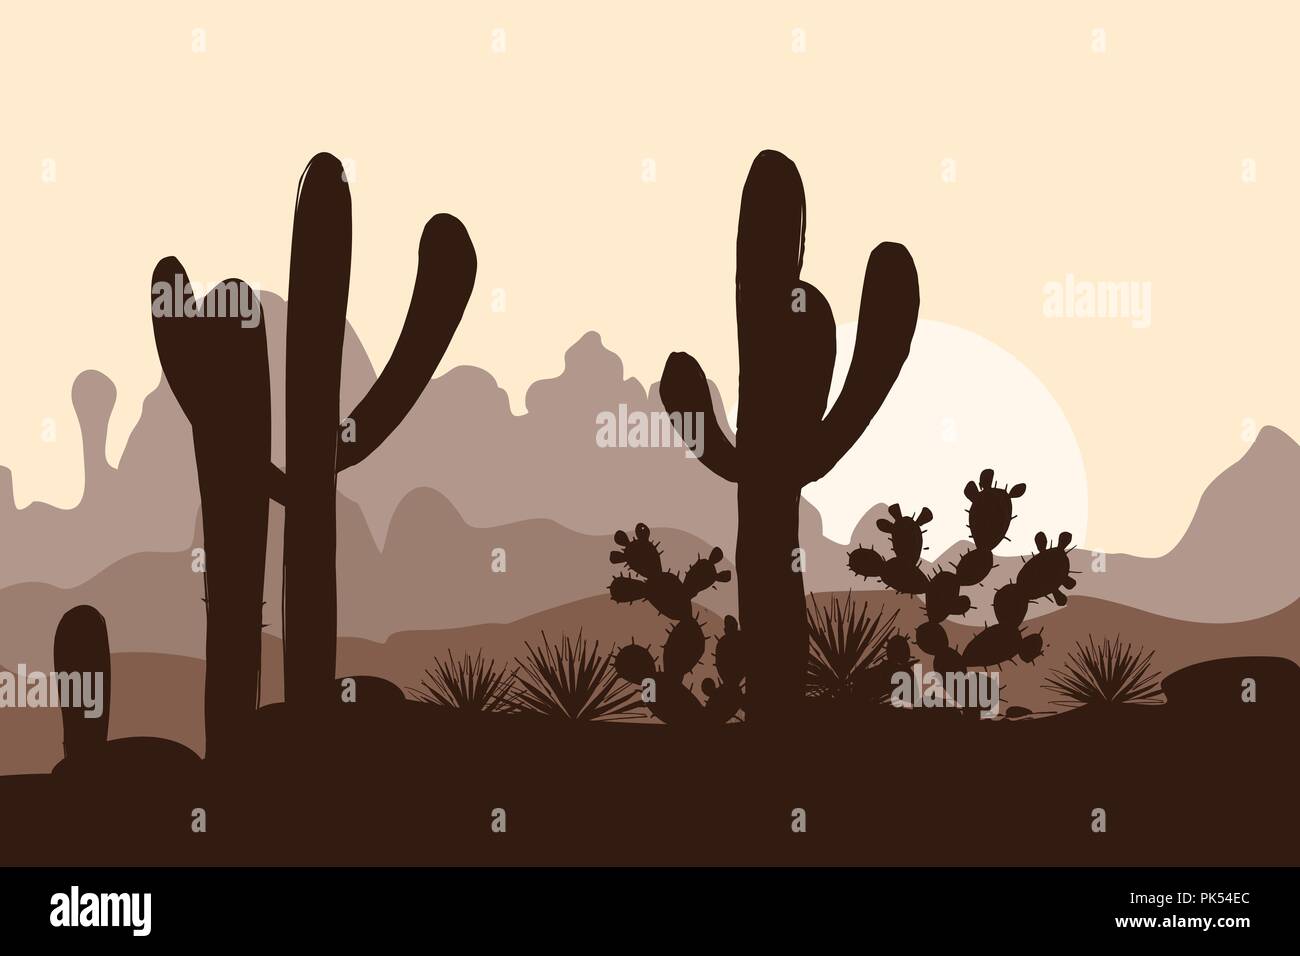 Morgen Landschaft mit niedlichen Saguaro Kakteen, Agaven und Feigenkakteen, in den Bergen. Vector Illustration. Cute braun Palette Stock Vektor